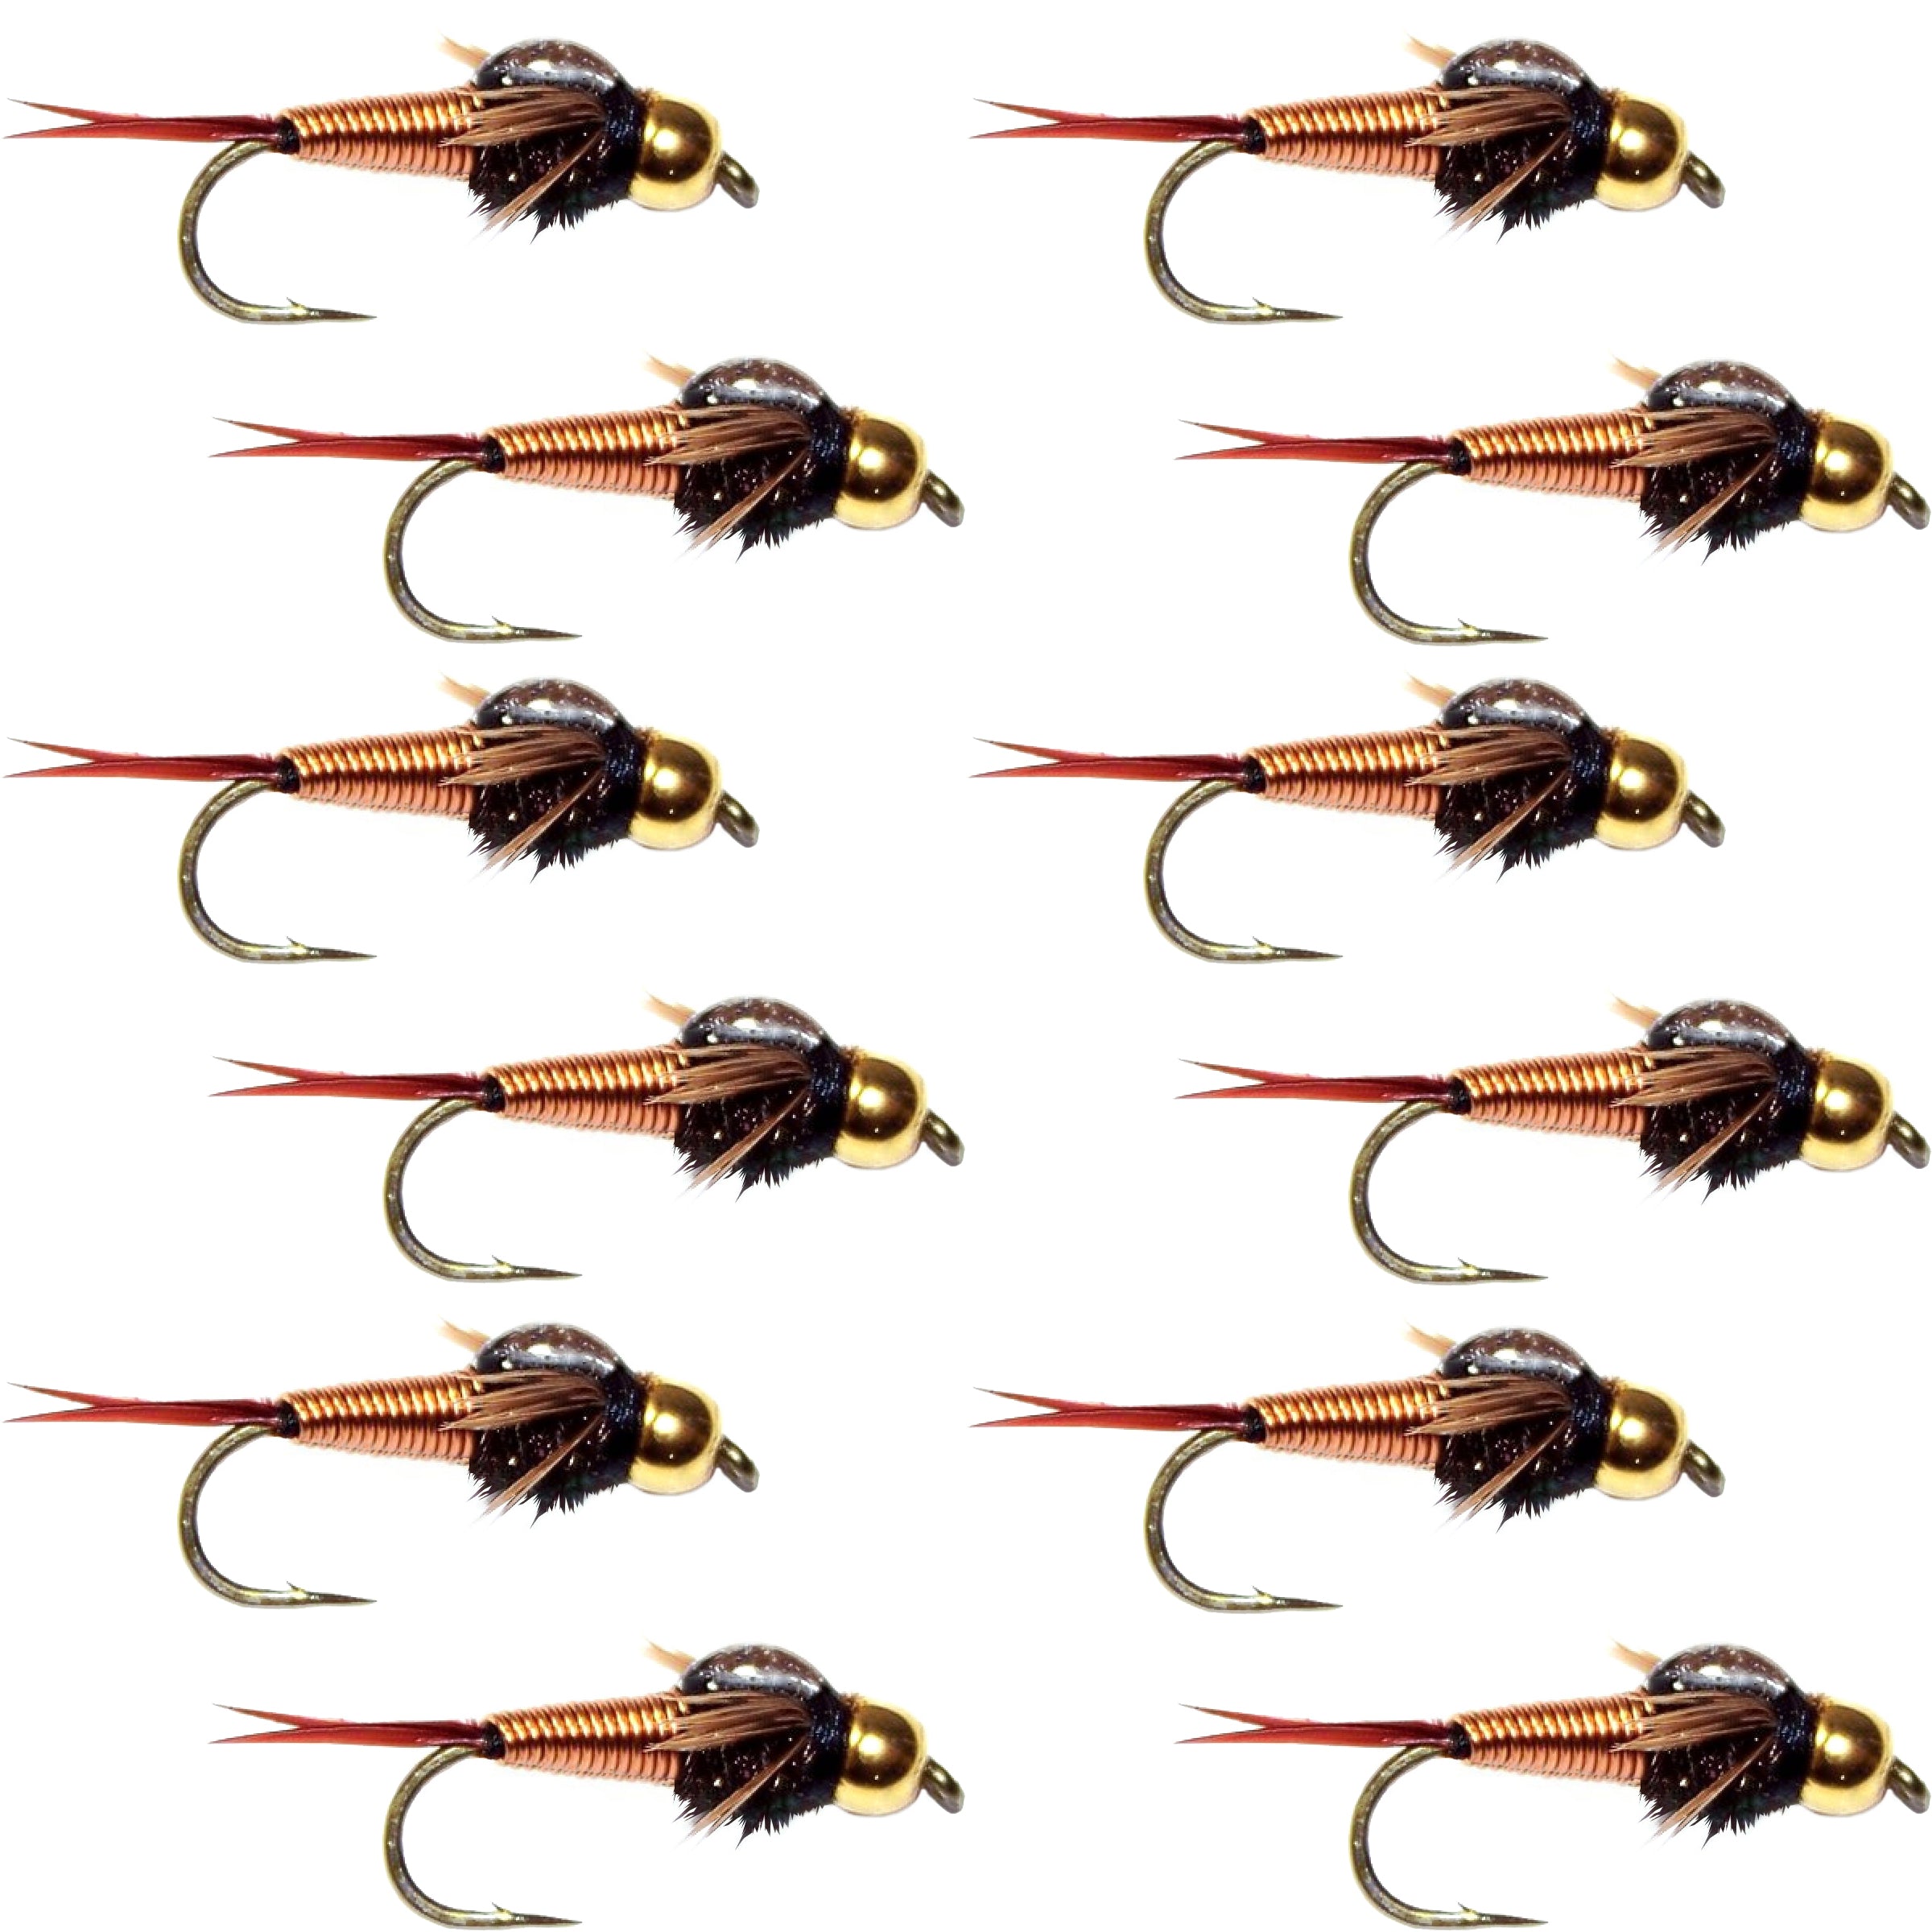 Tungsten Bead Head Copper John Nymph 1 Dozen Fly Fishing Flies - Hook Size 12